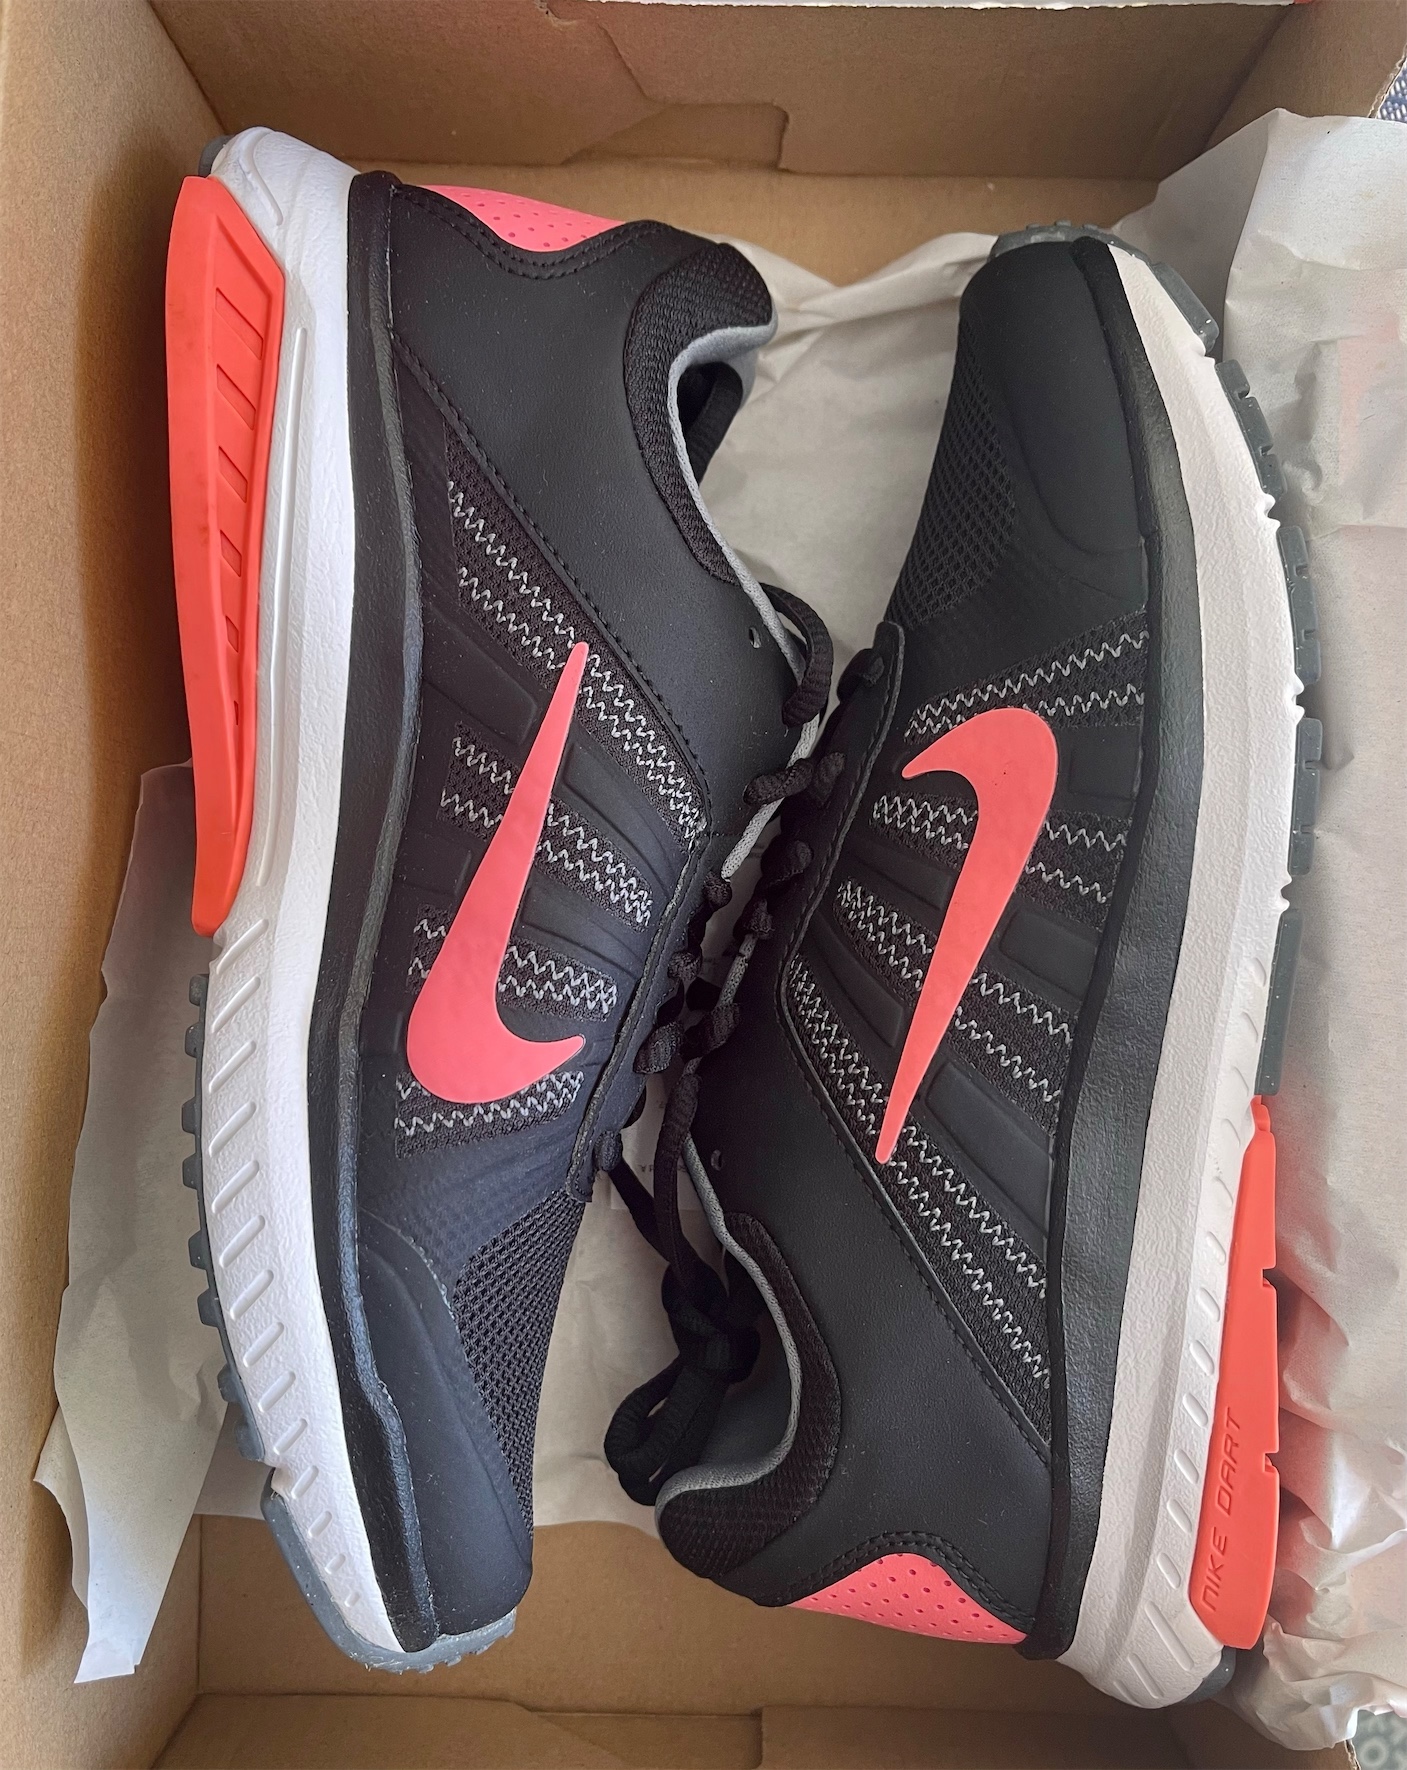 zapatos para mujer - Tenis Nike en size 7, 7.5 y 8 de mujer originales y nuevos en caja 1